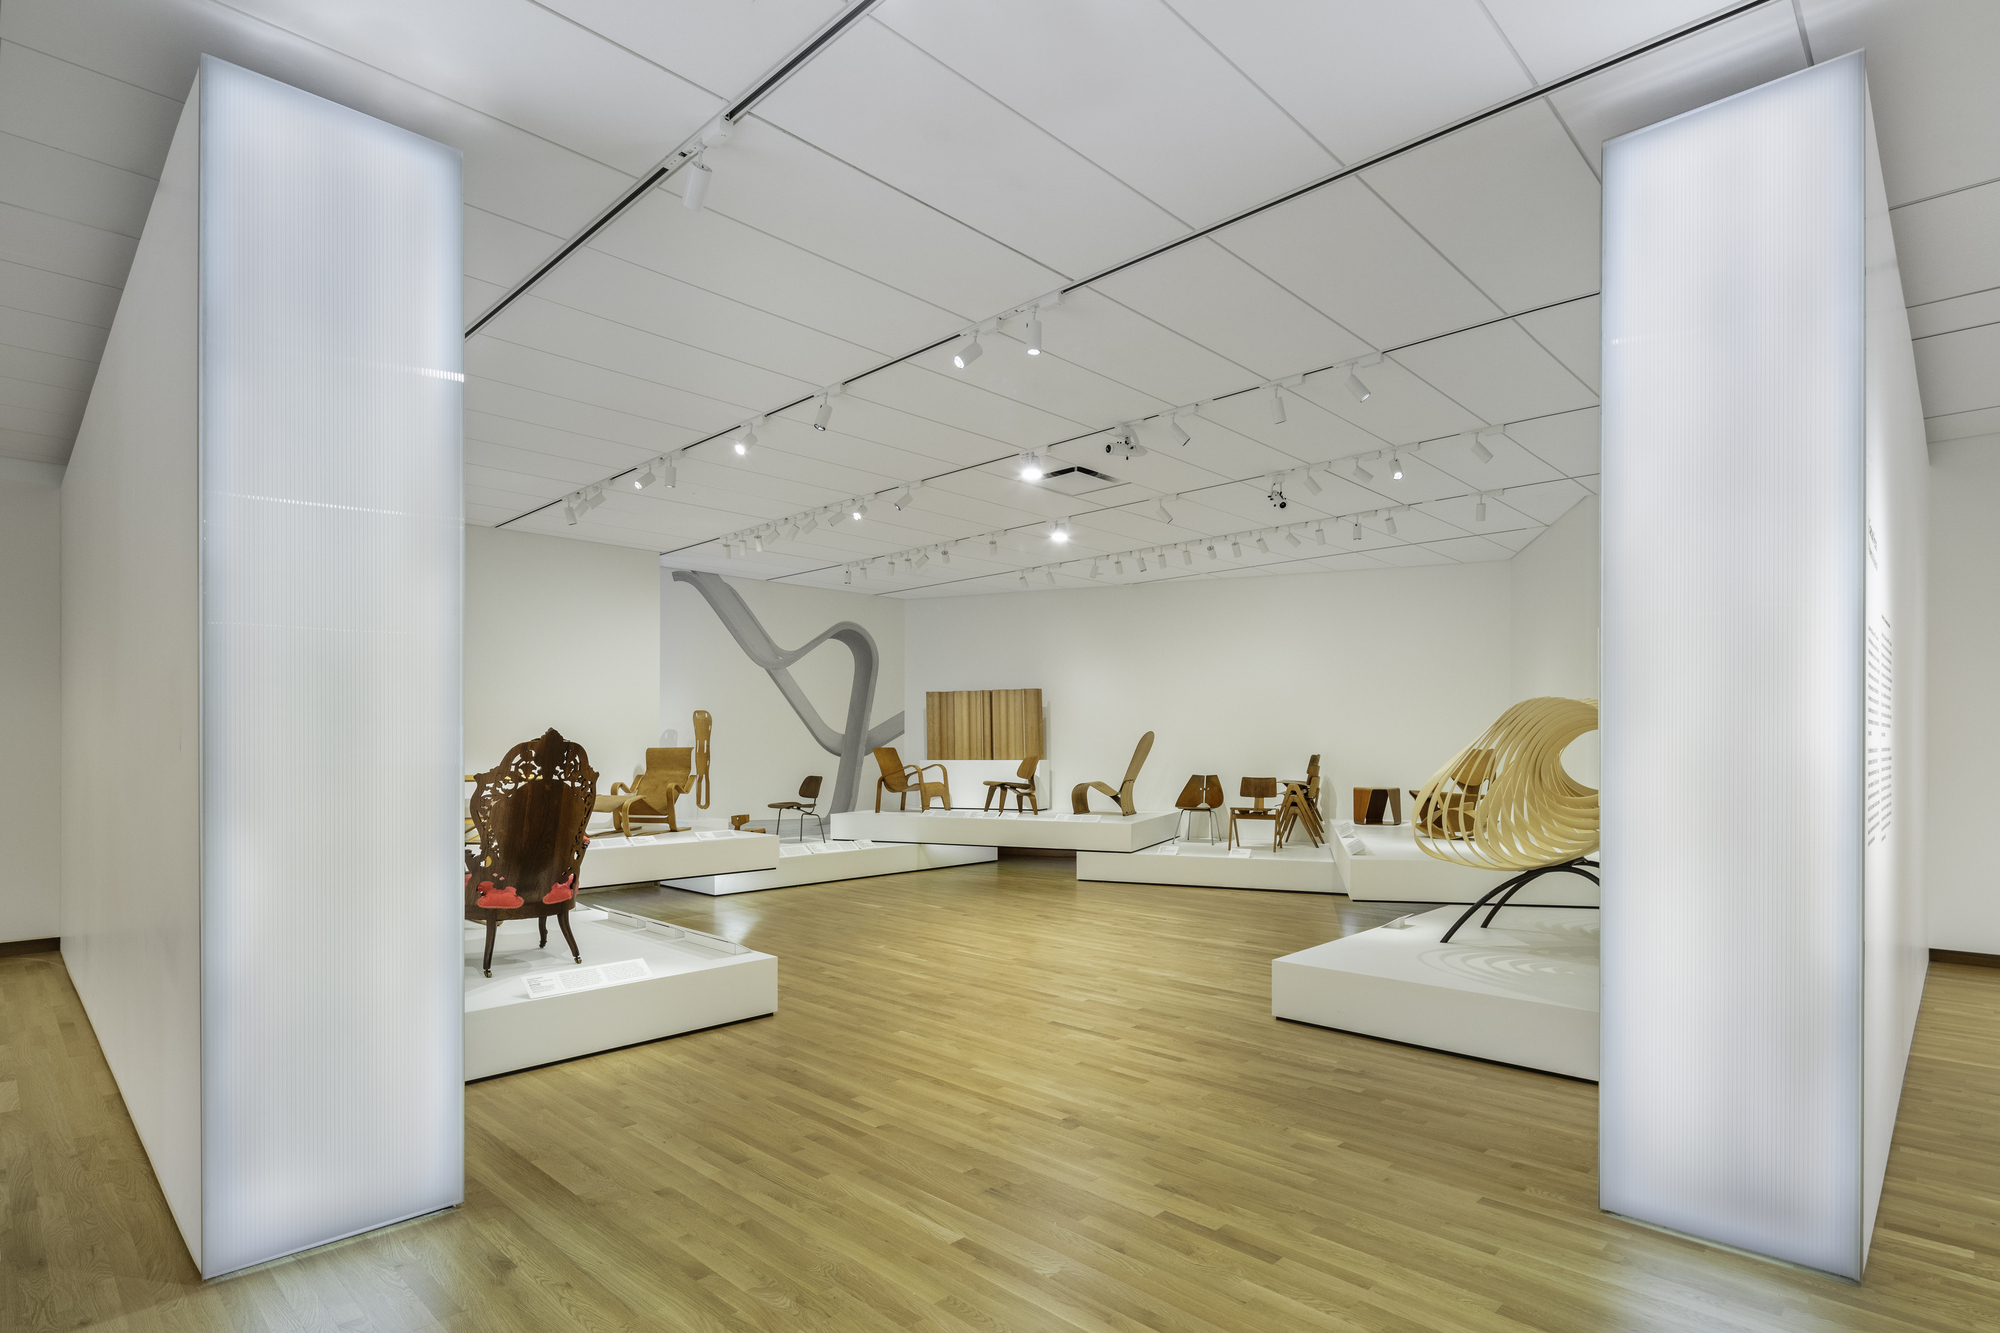 图片[2]|丹佛艺术博物馆设计画廊与工作室 / OMA|ART-Arrakis | 建筑室内设计的创新与灵感